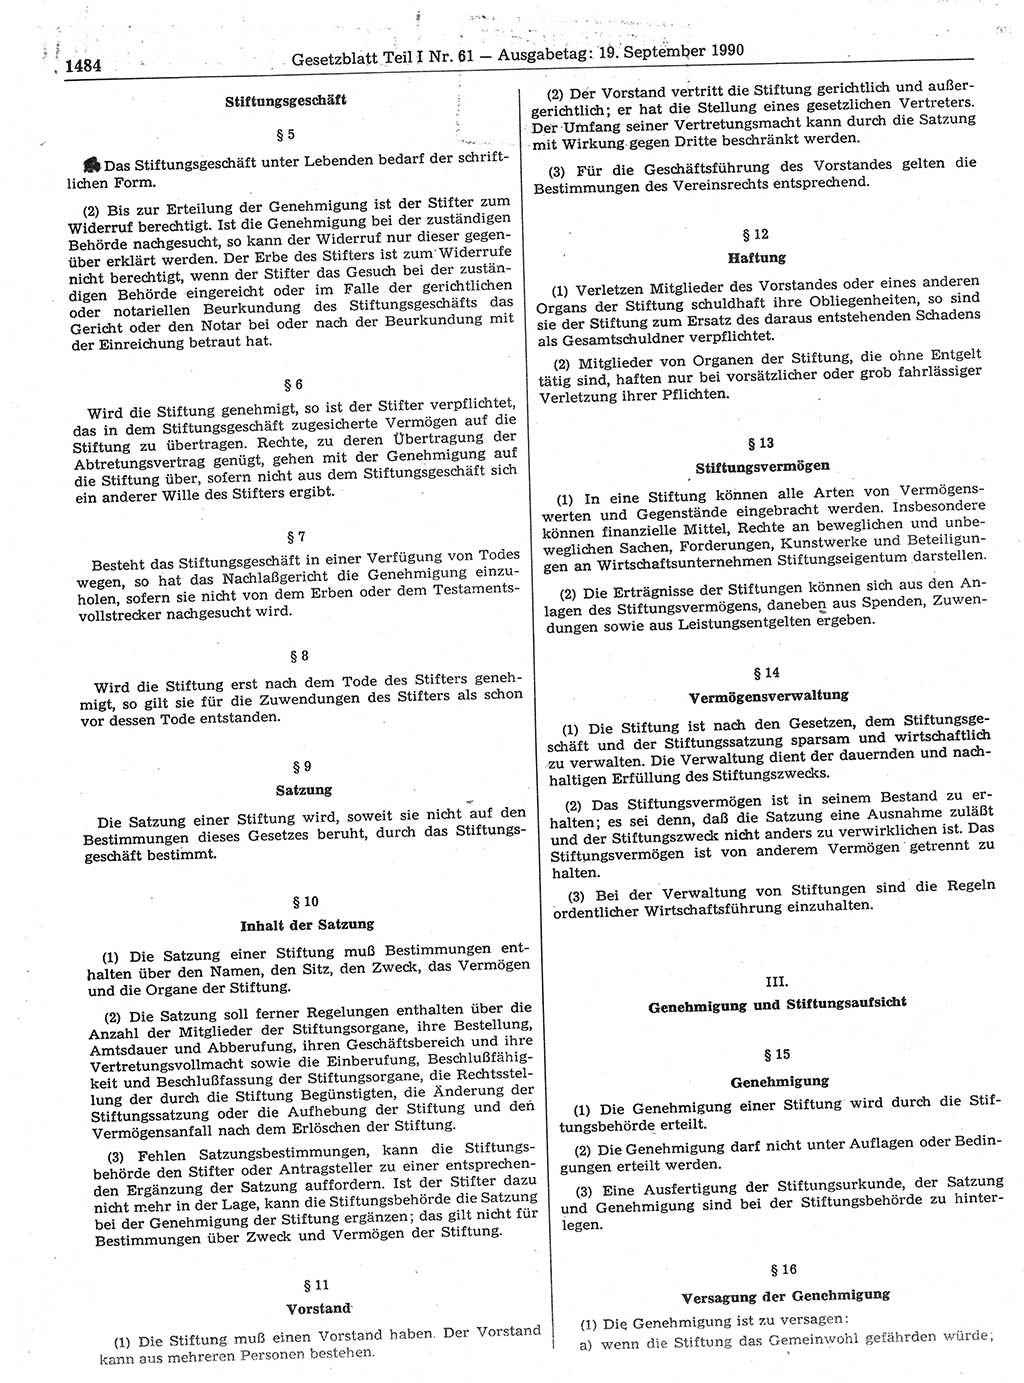 Gesetzblatt (GBl.) der Deutschen Demokratischen Republik (DDR) Teil Ⅰ 1990, Seite 1484 (GBl. DDR Ⅰ 1990, S. 1484)